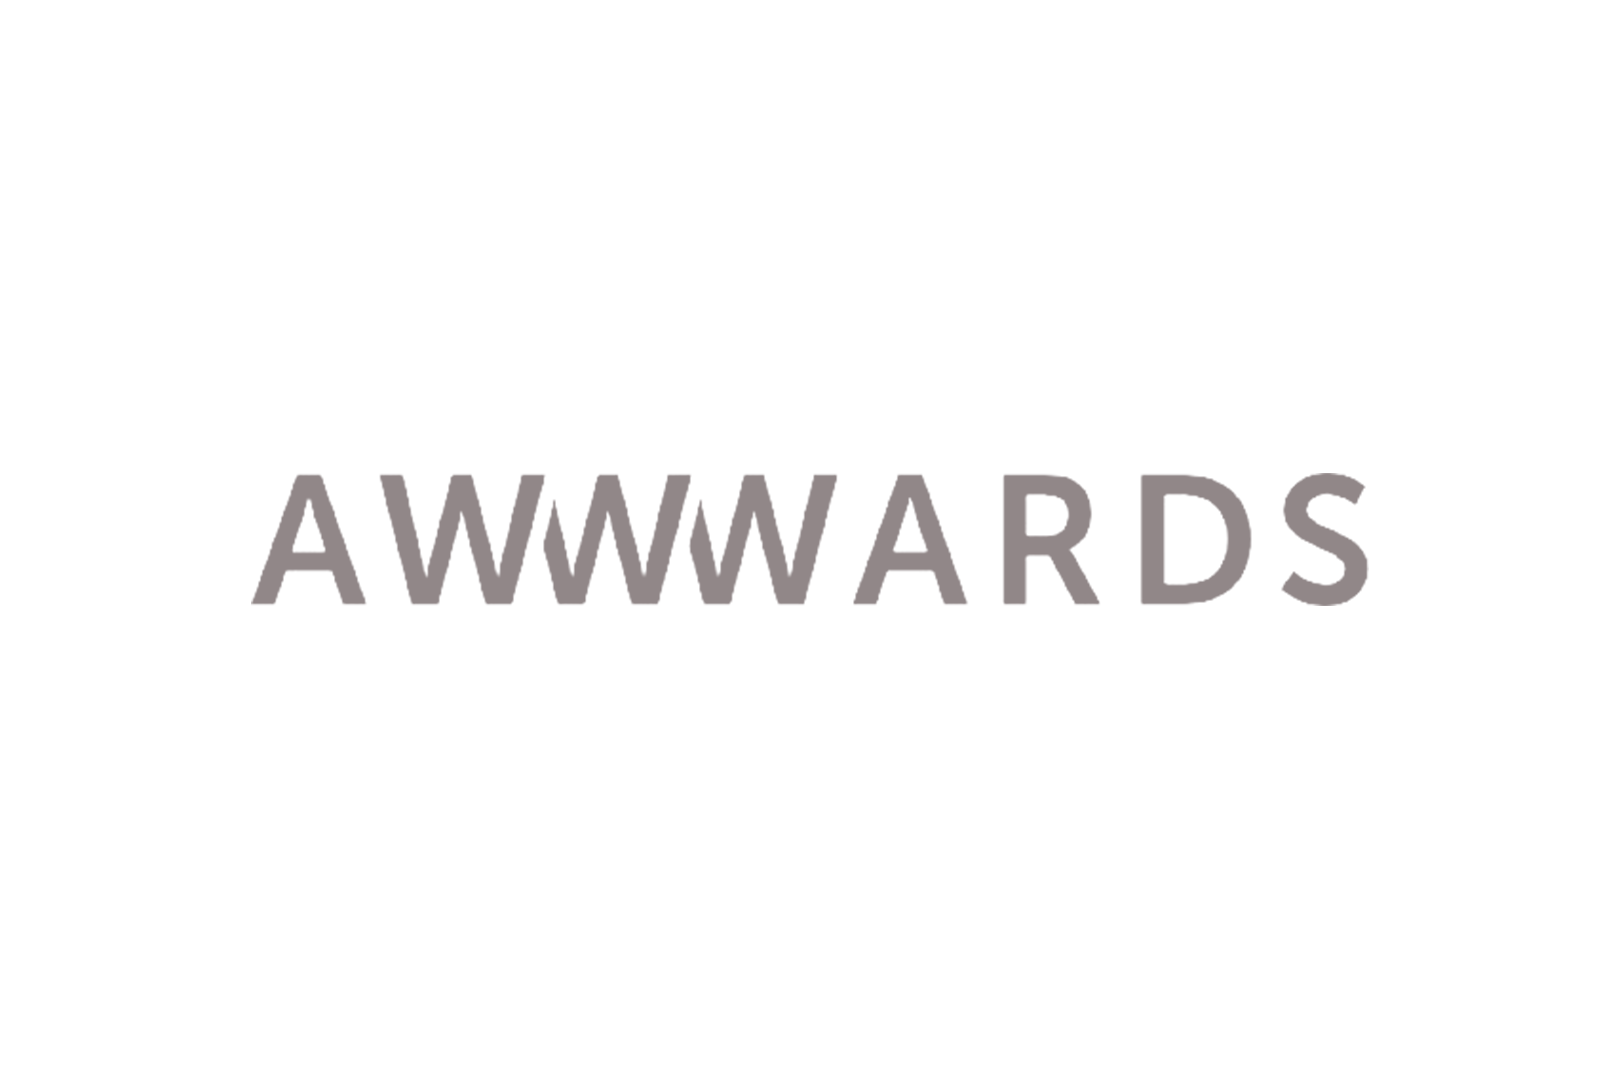 blokstudio_001_awwward_logo